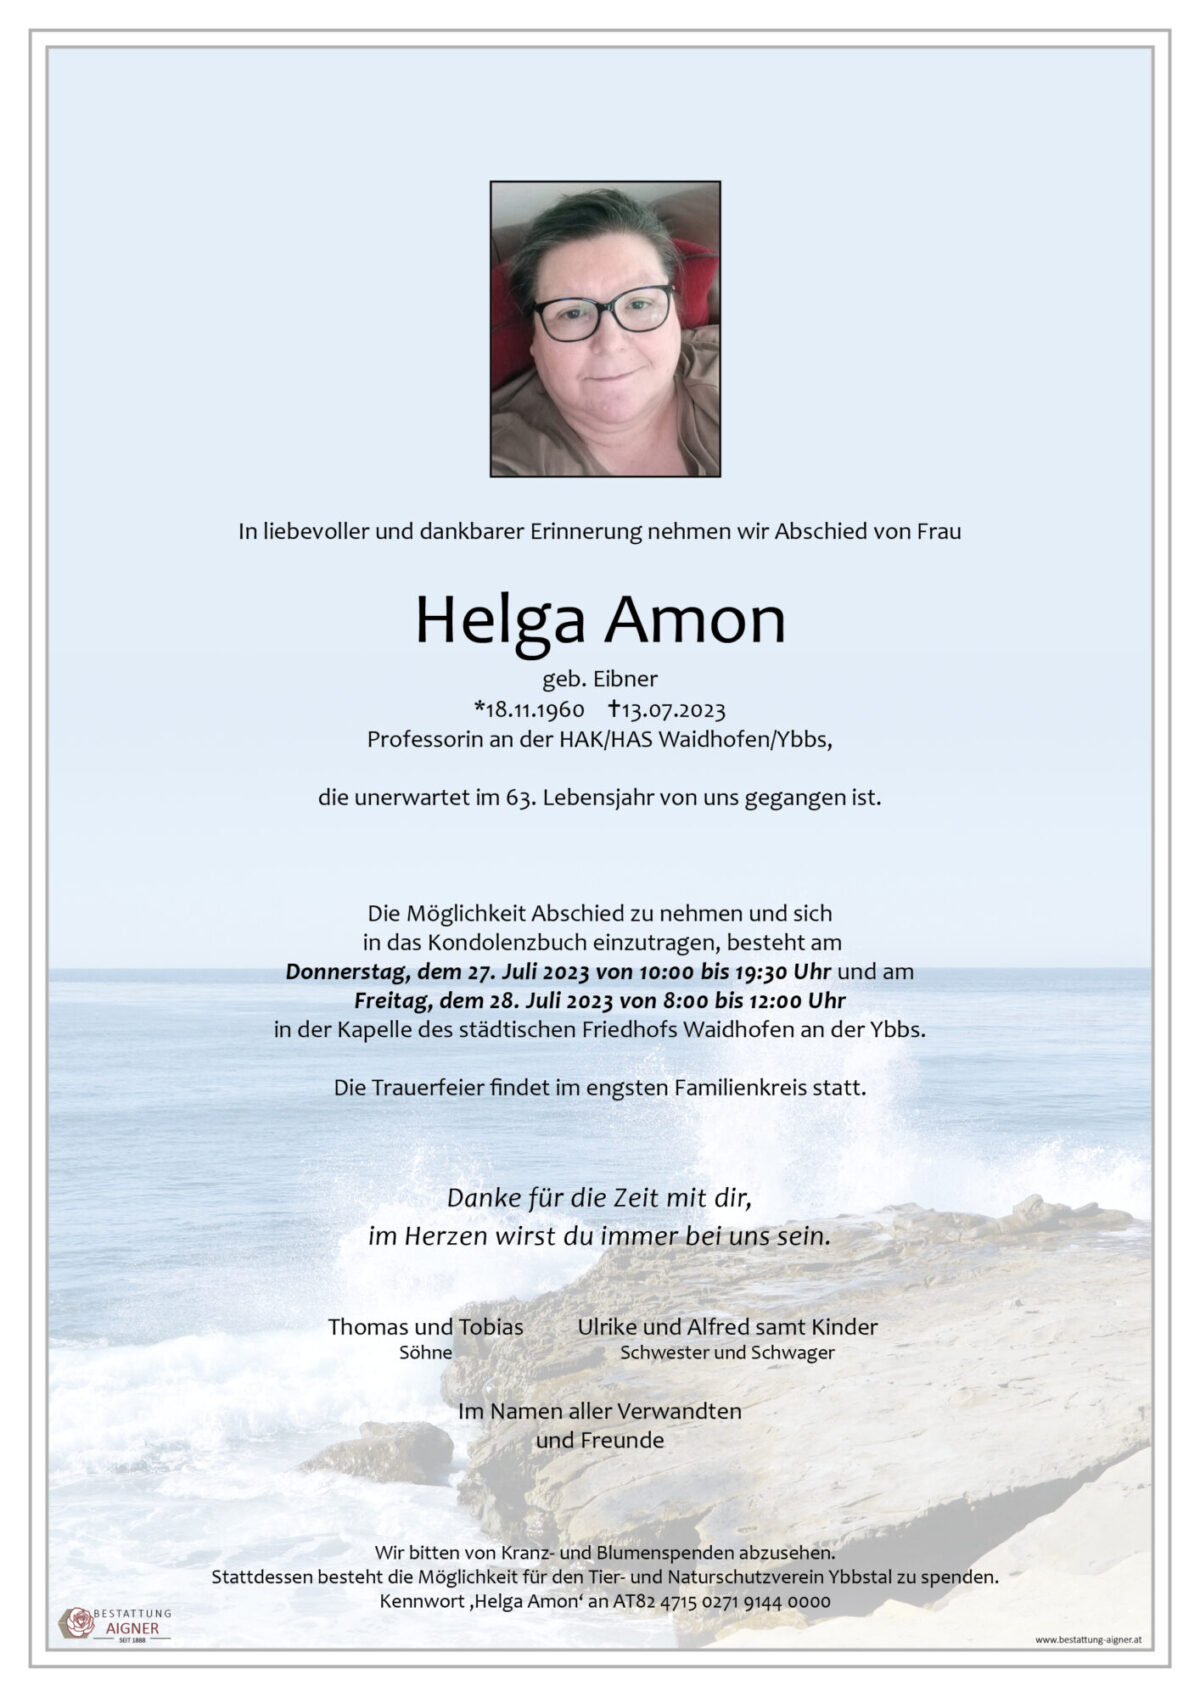 Helga Amon